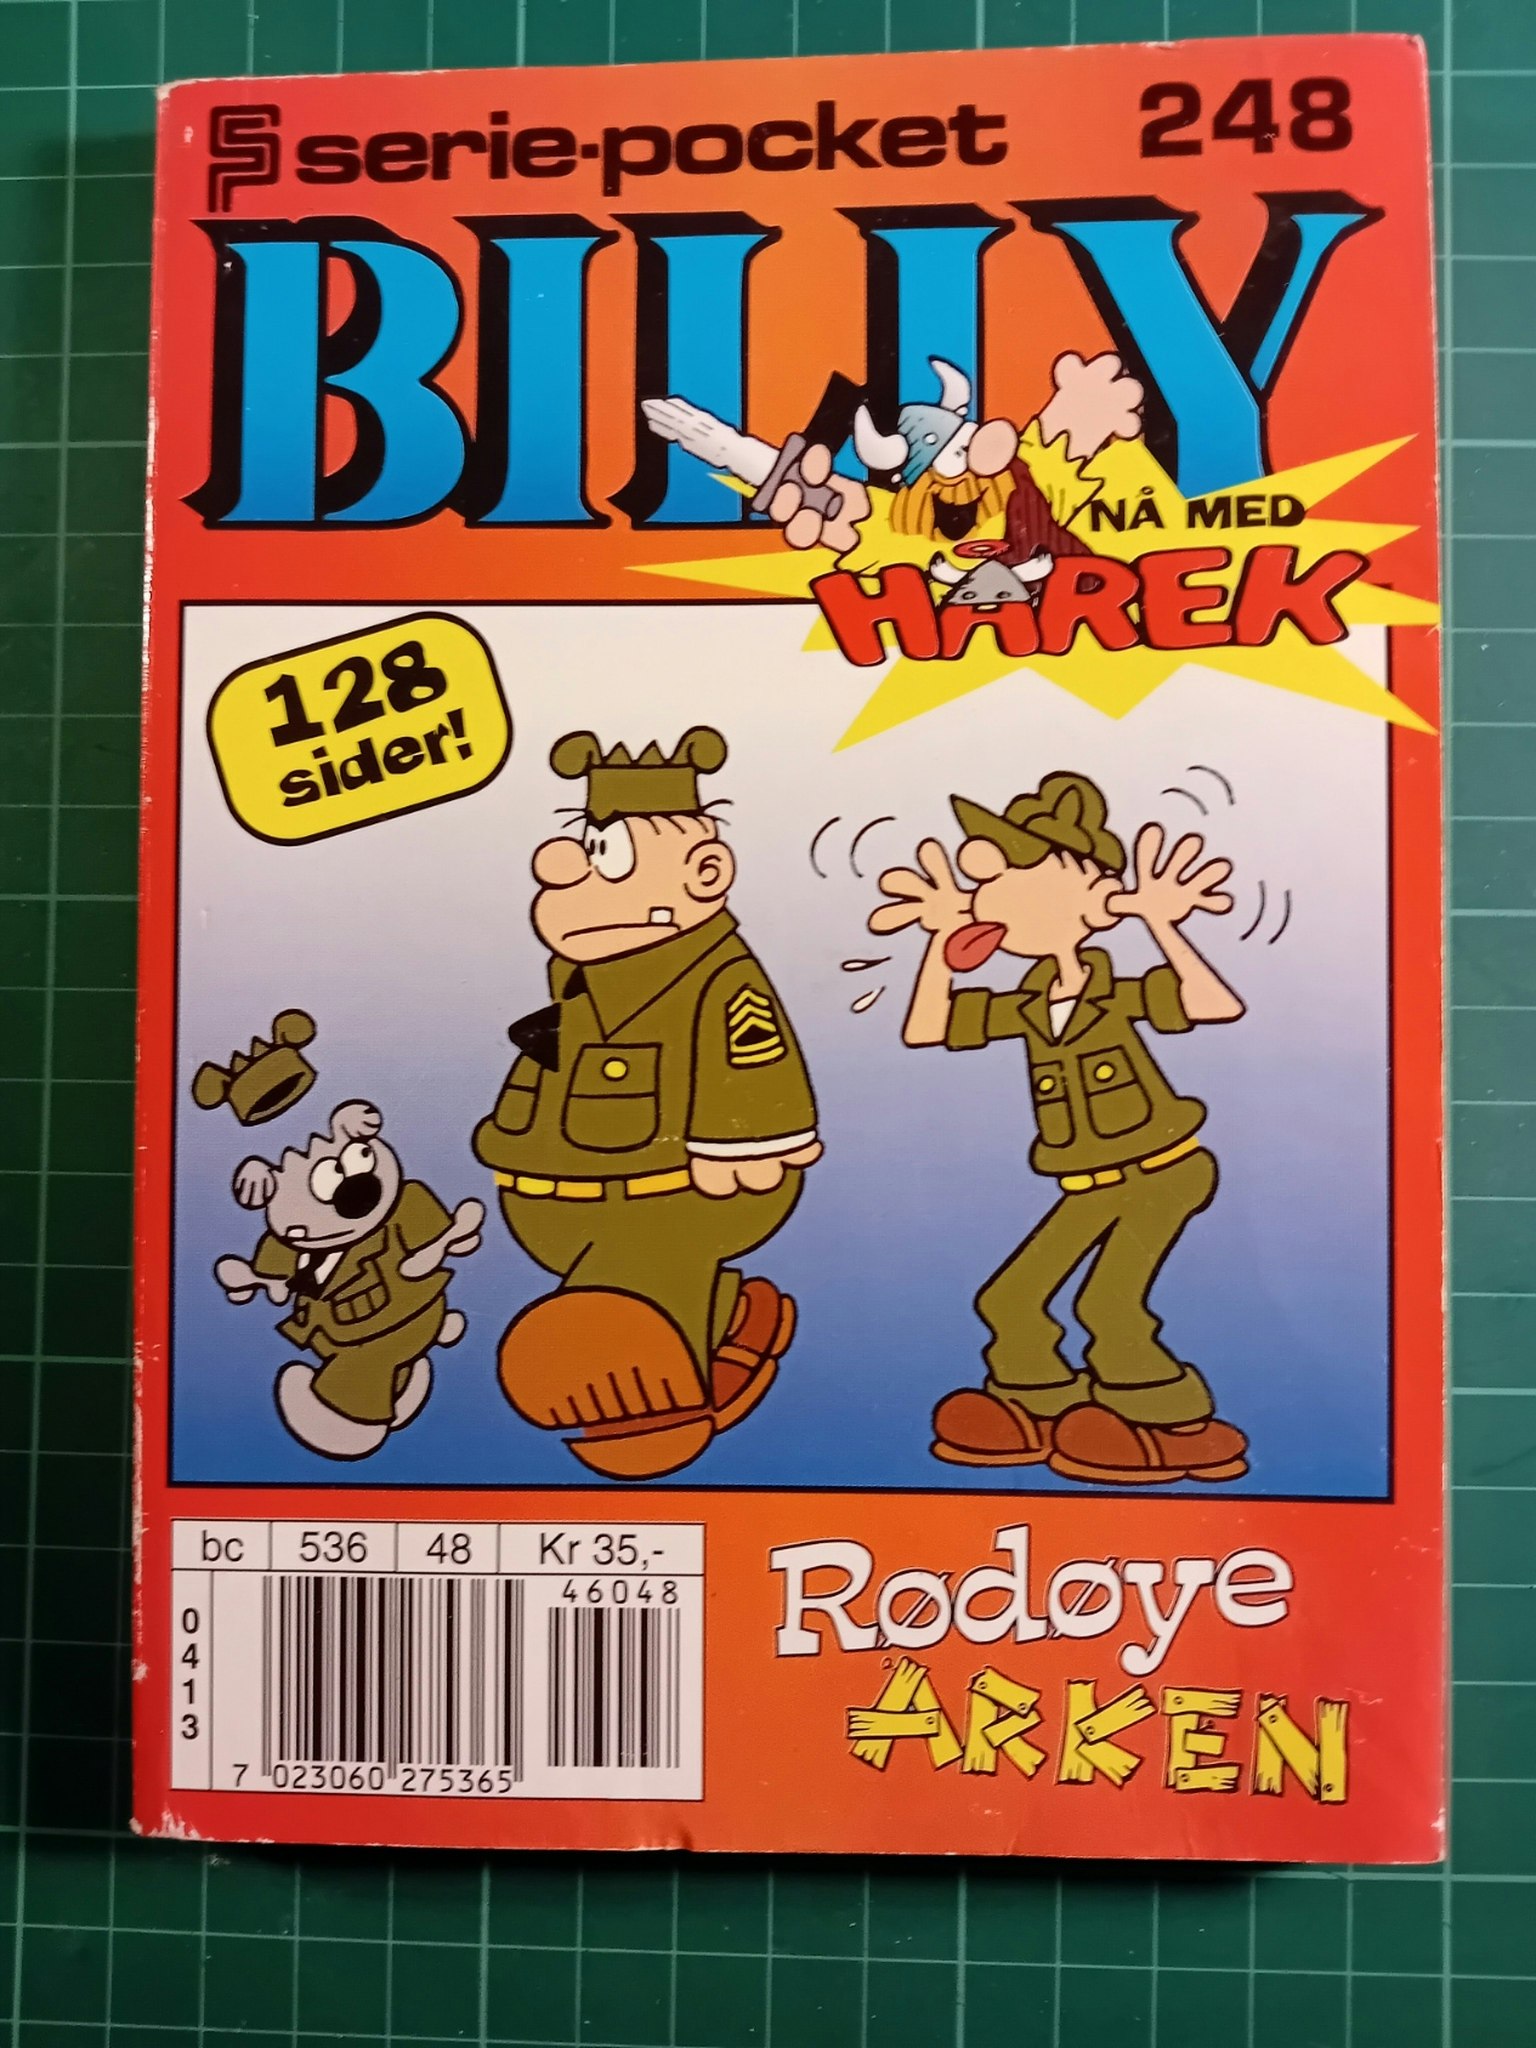 Serie-pocket 248 : Billy